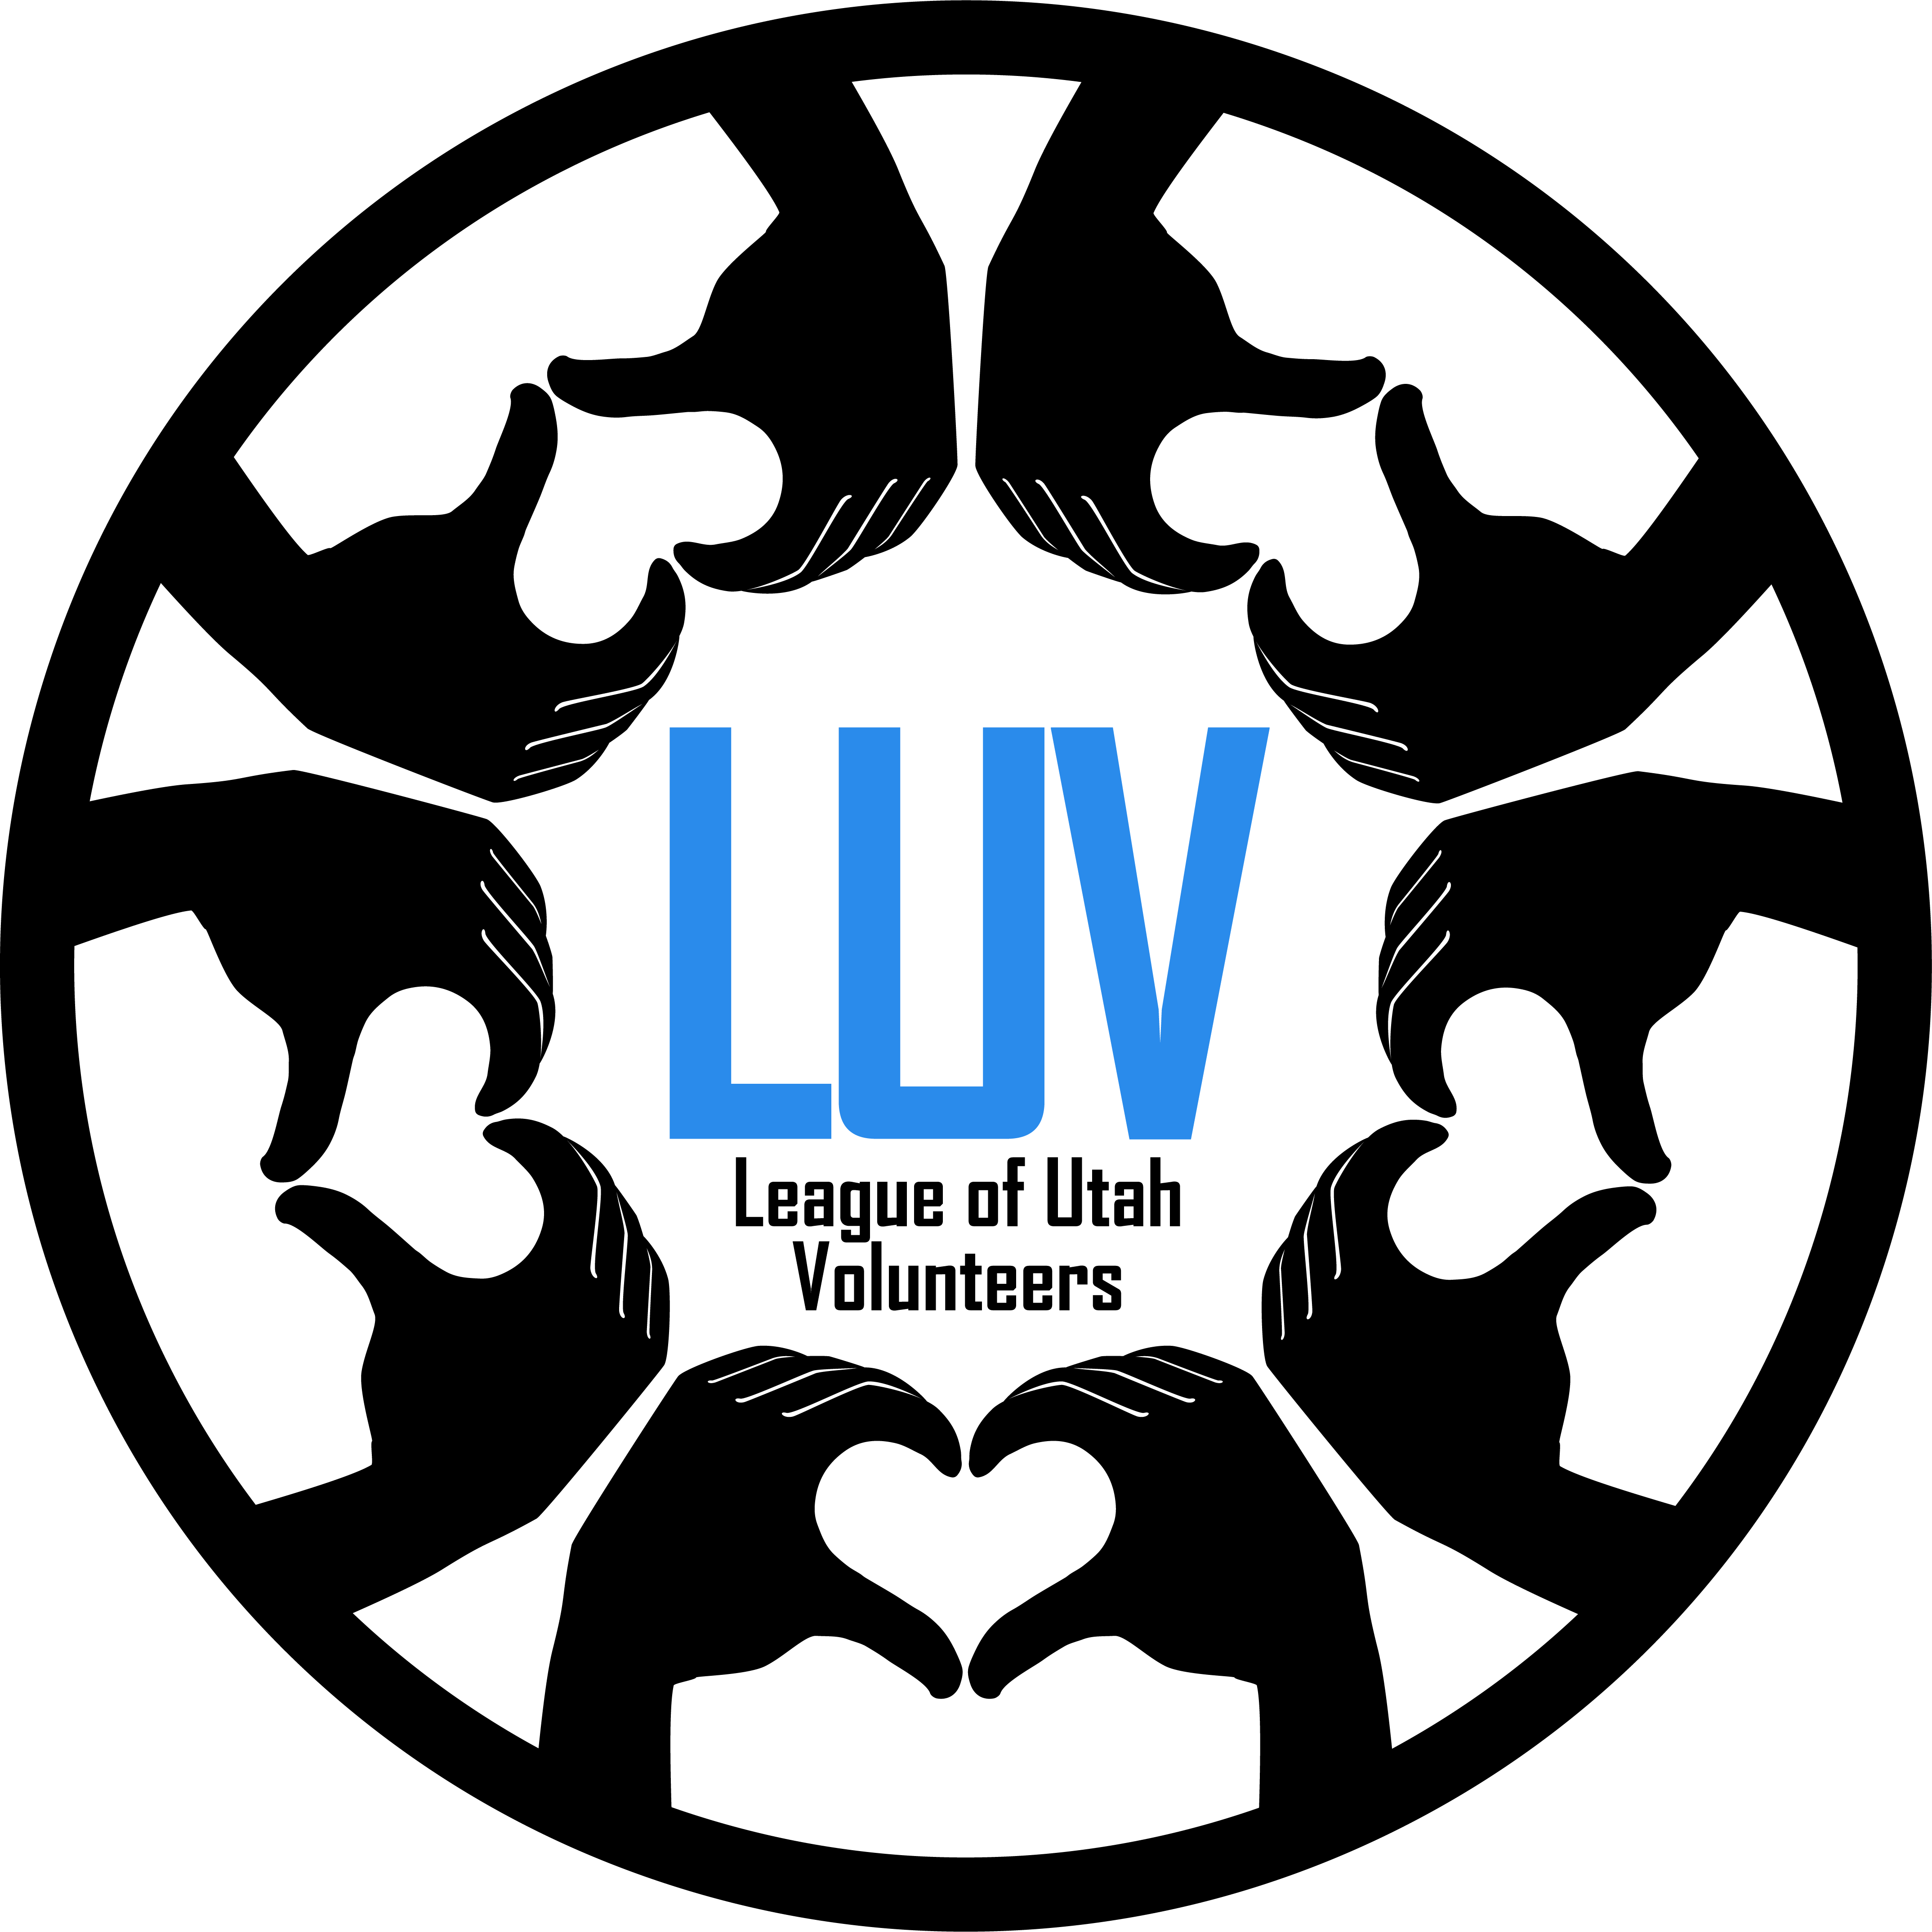 LUV - LEAGUE OF UTAH VOLUNTEERS